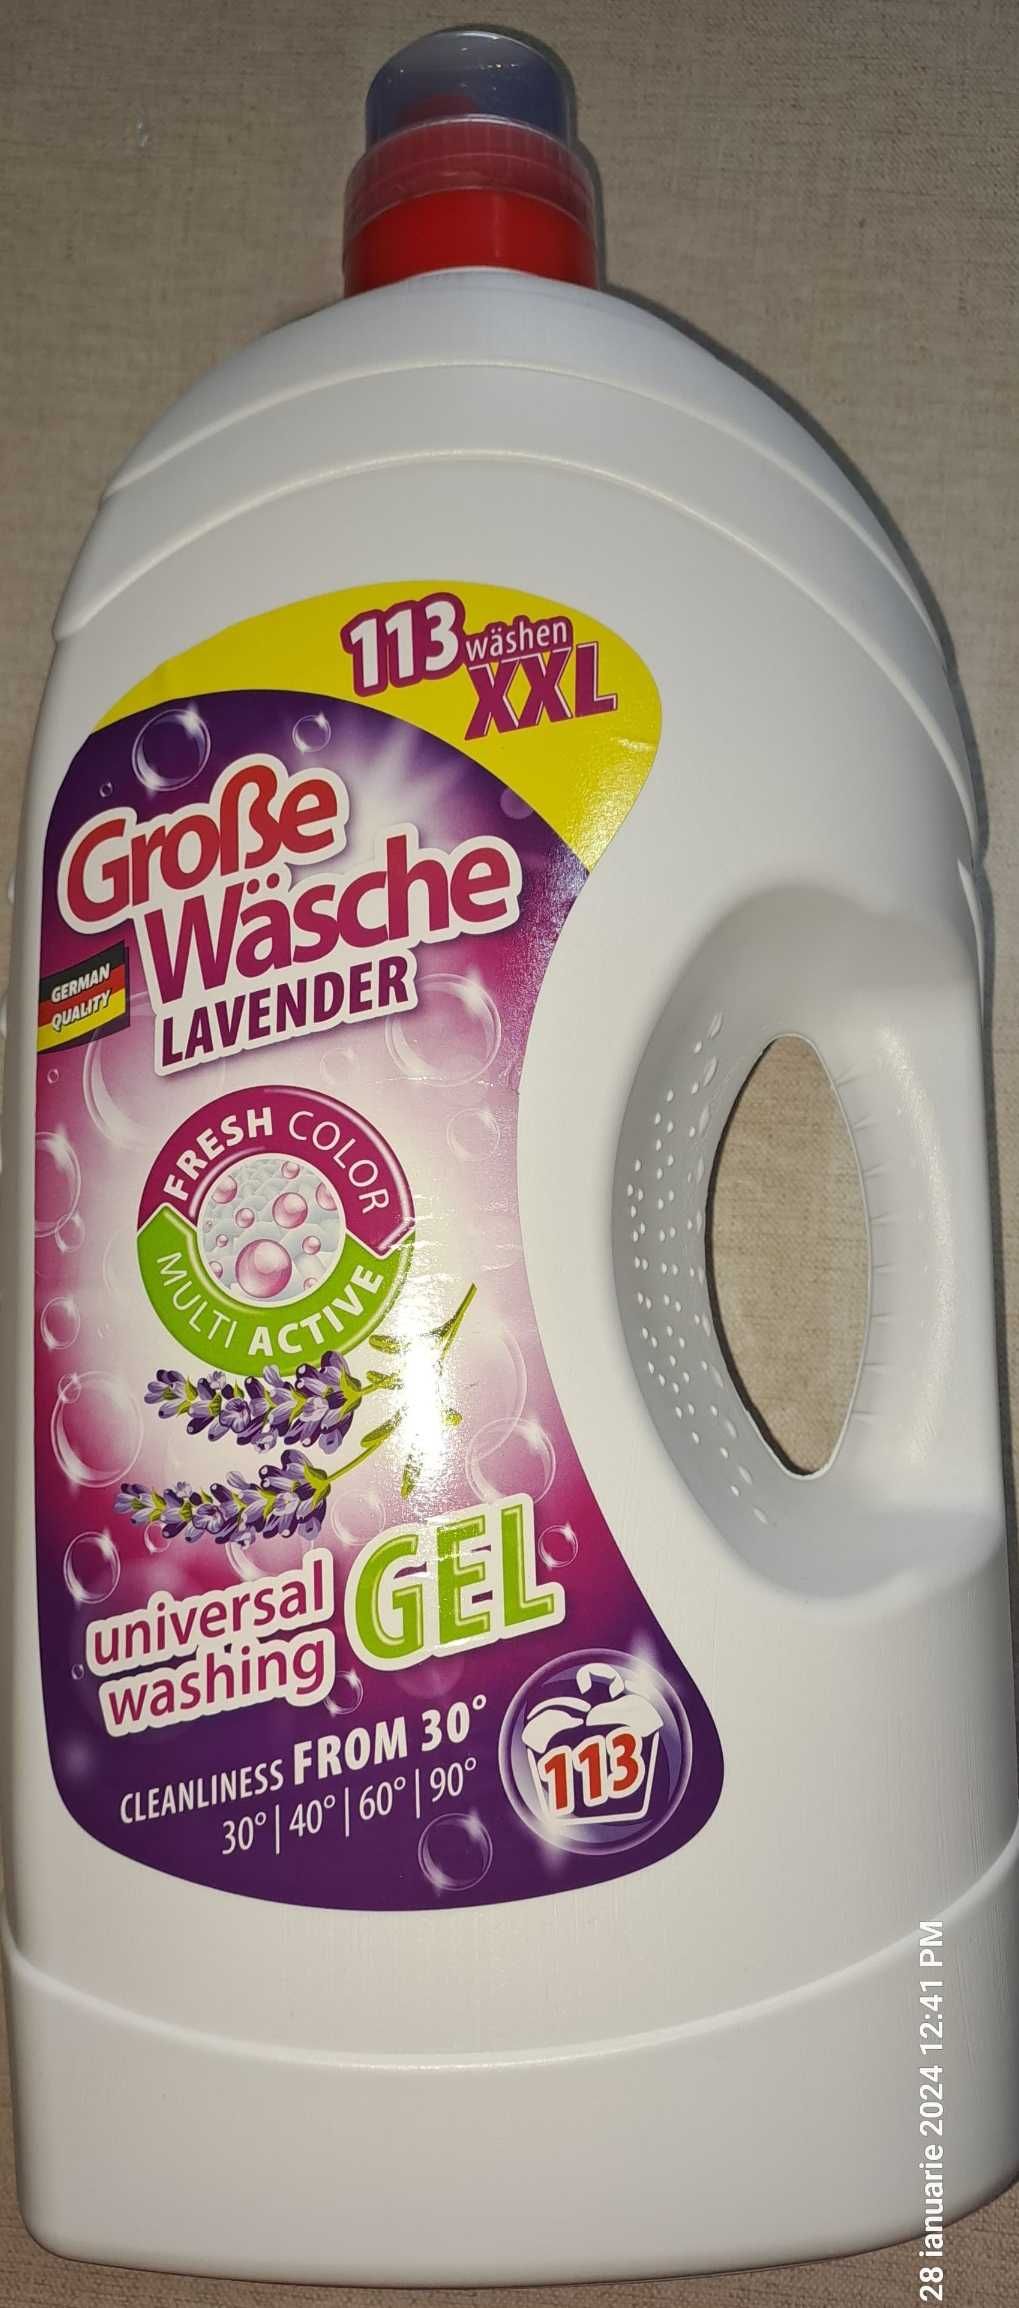 Detergent Gel (Lichid) Universal, German Quality, 5,6 L, Grose Wasche.